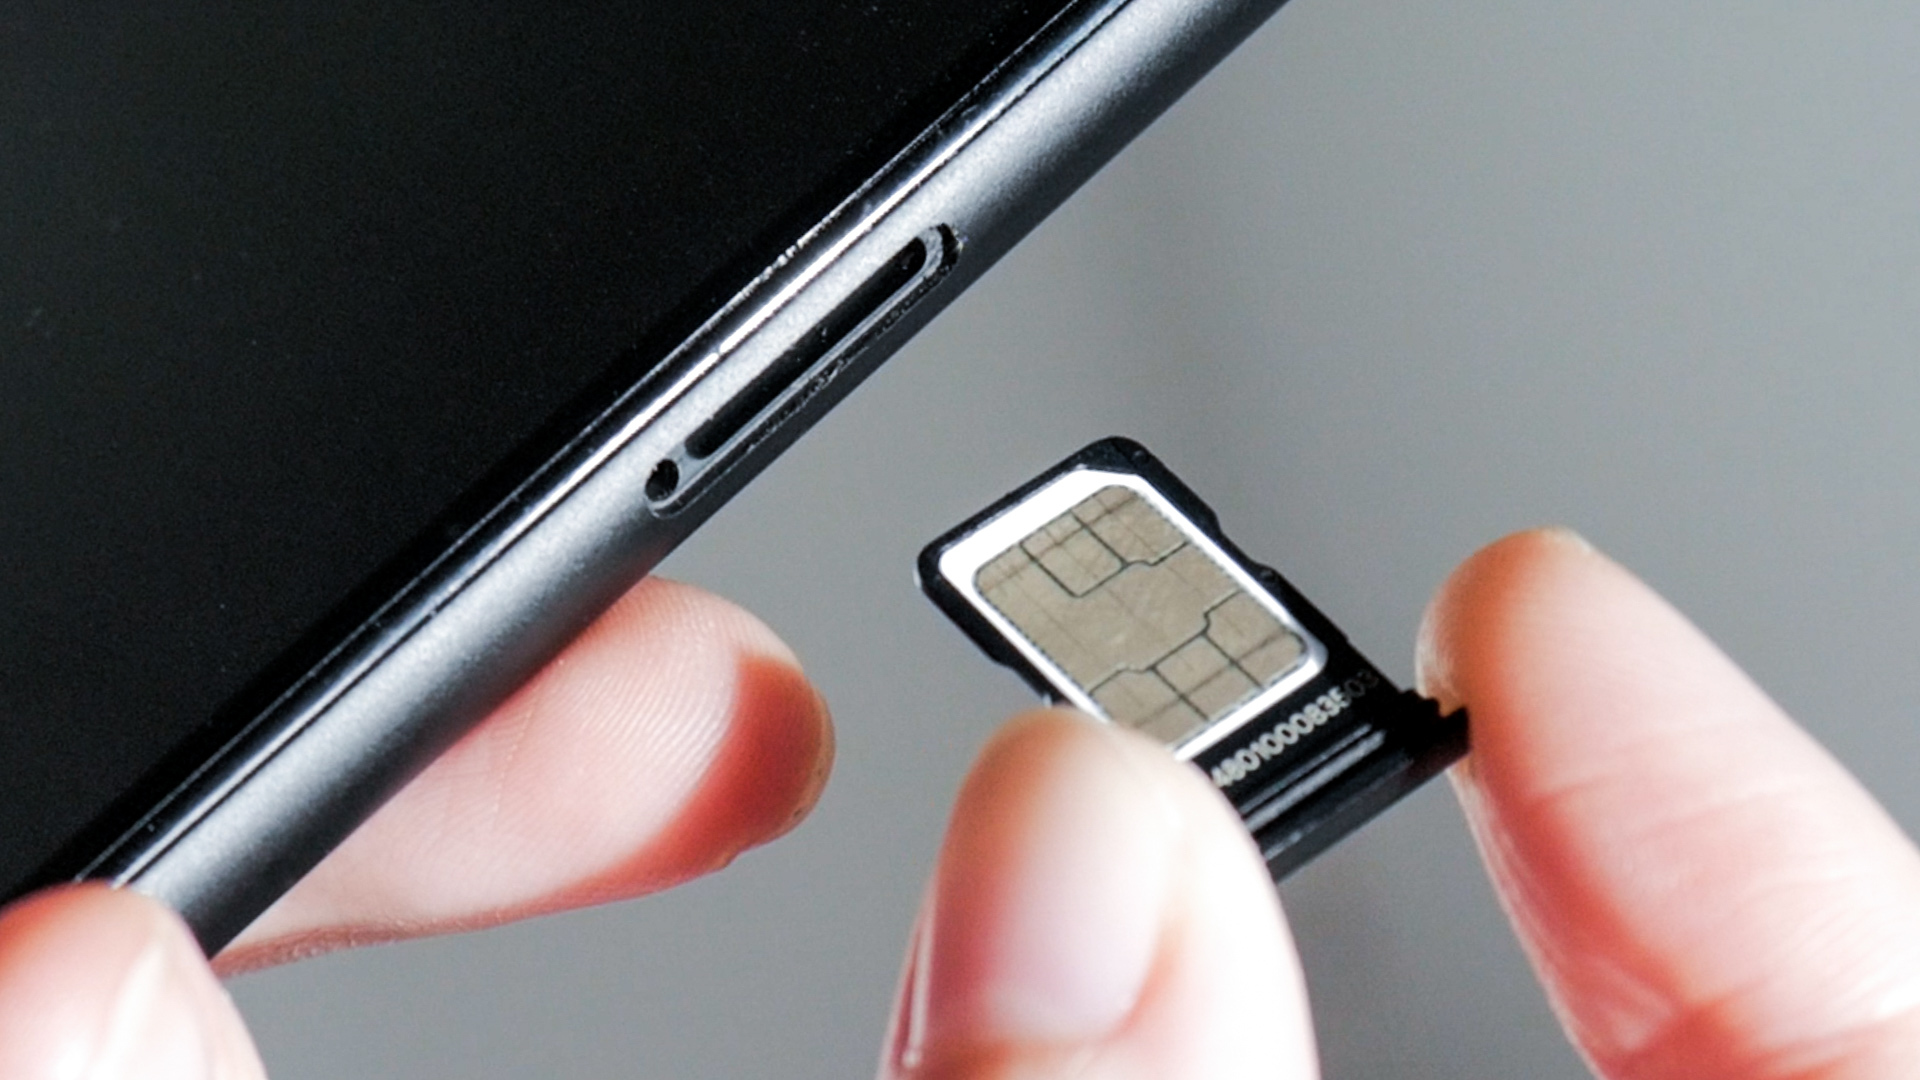 Mini, micro, nano : pourquoi les cartes SIM ont-elles différentes tailles ?  - Numerama